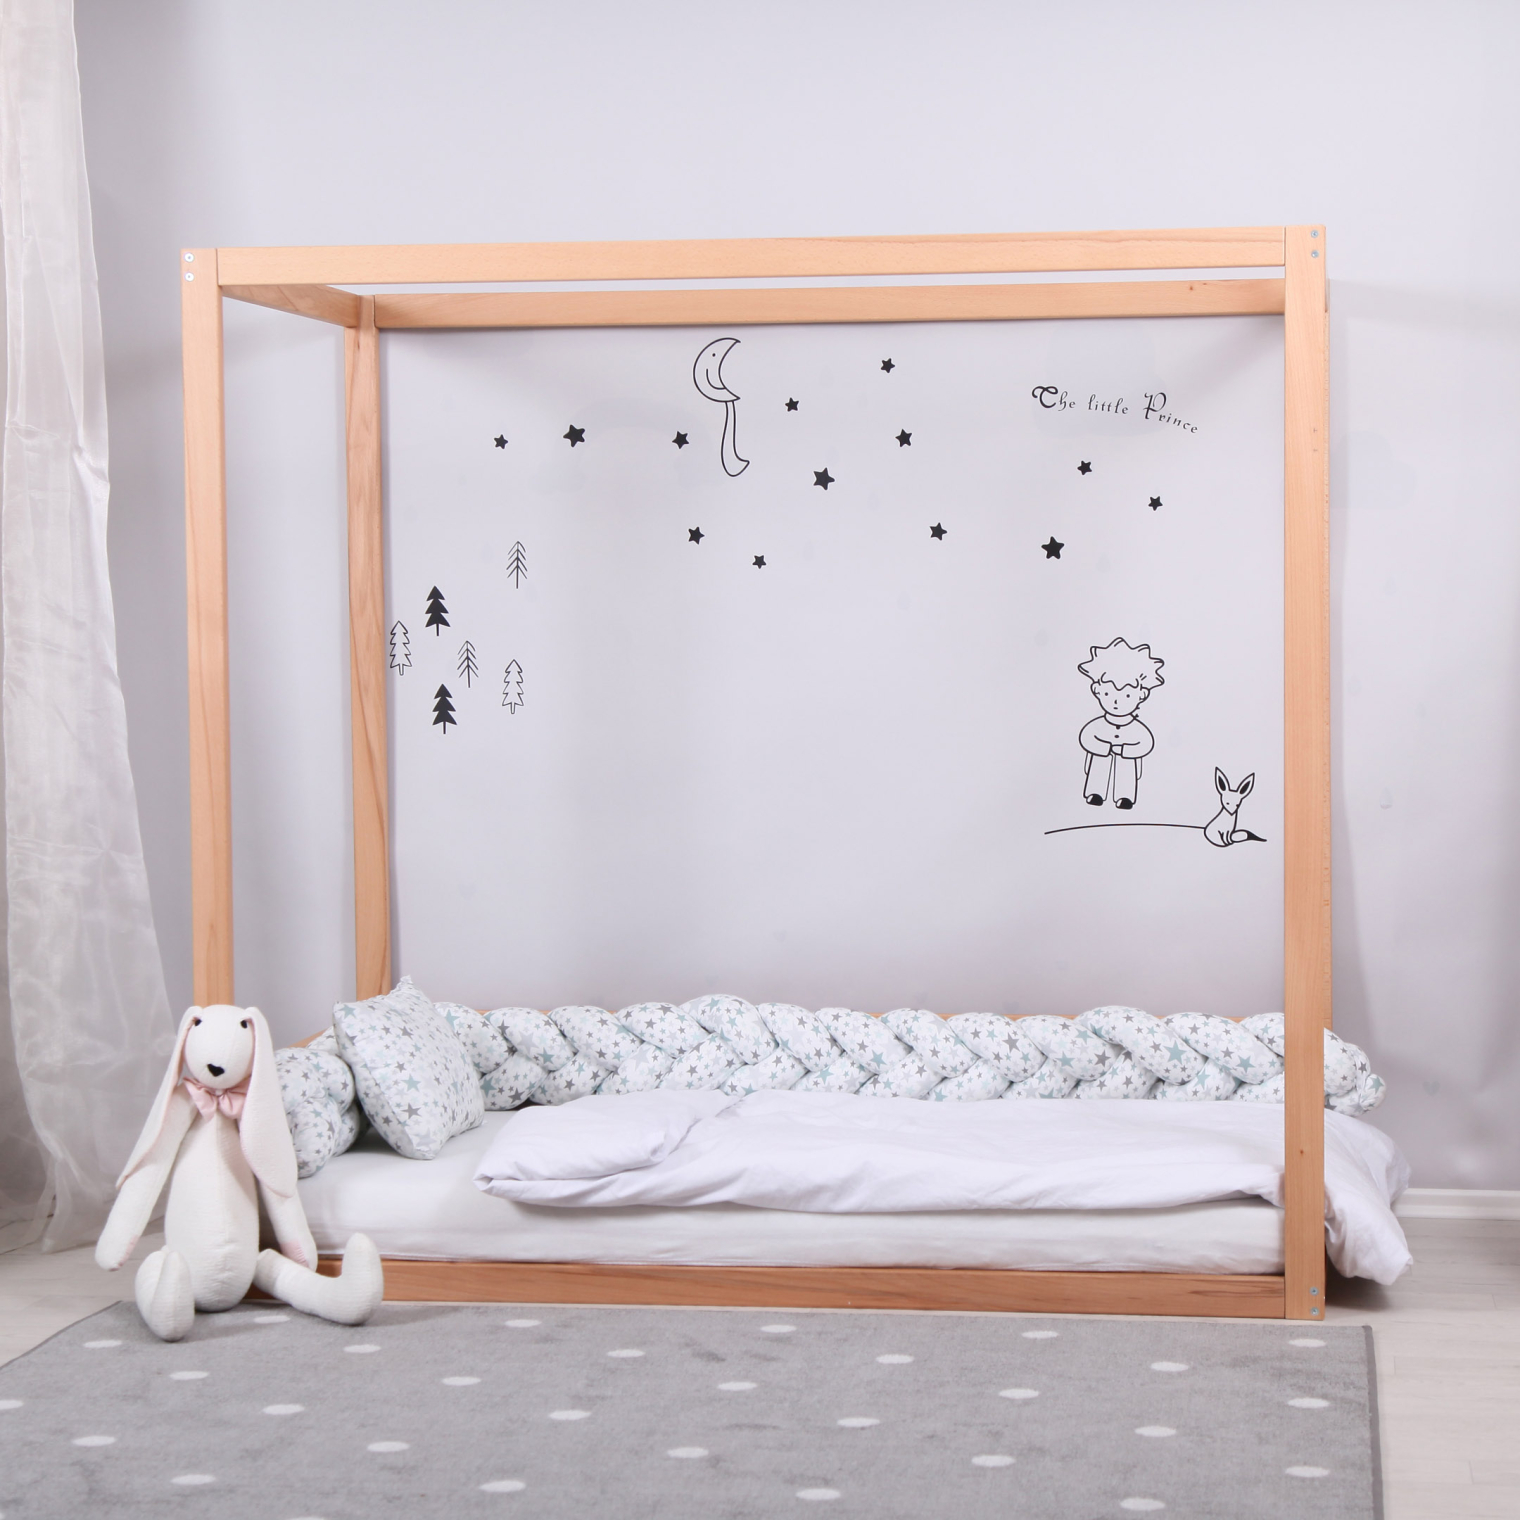 KUBO Montessori bed 